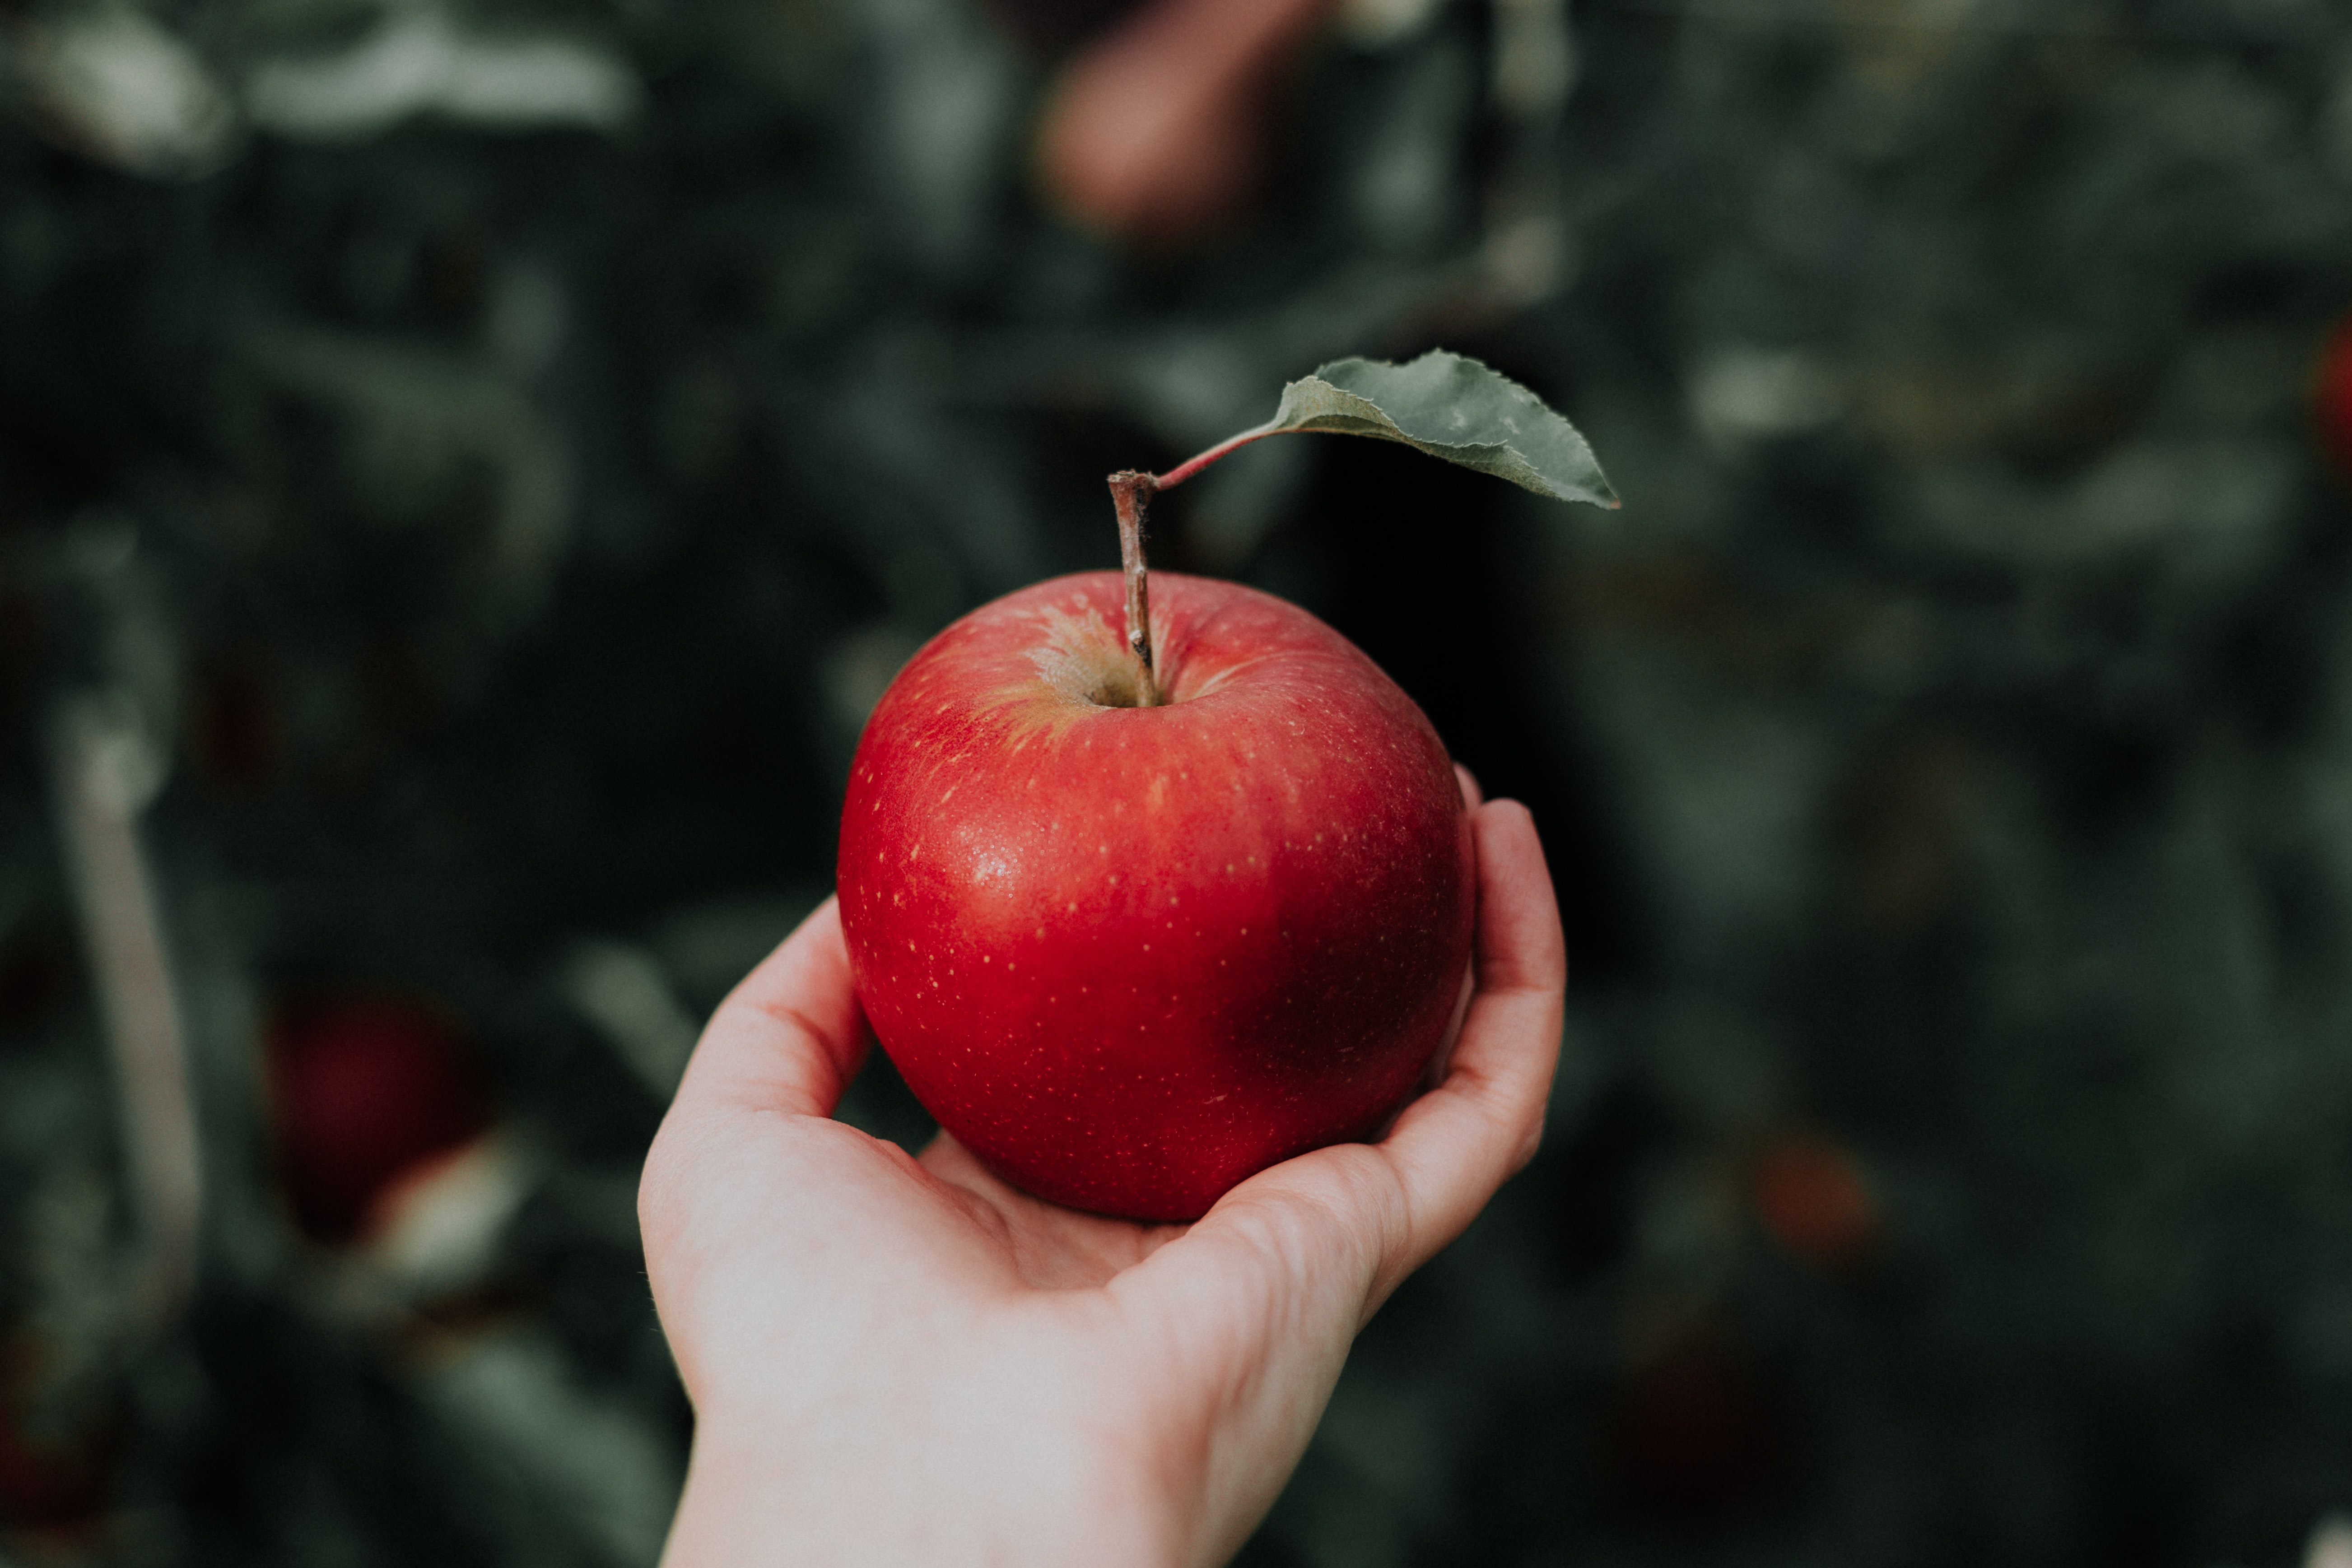 alma szív egészségügyi előnyei